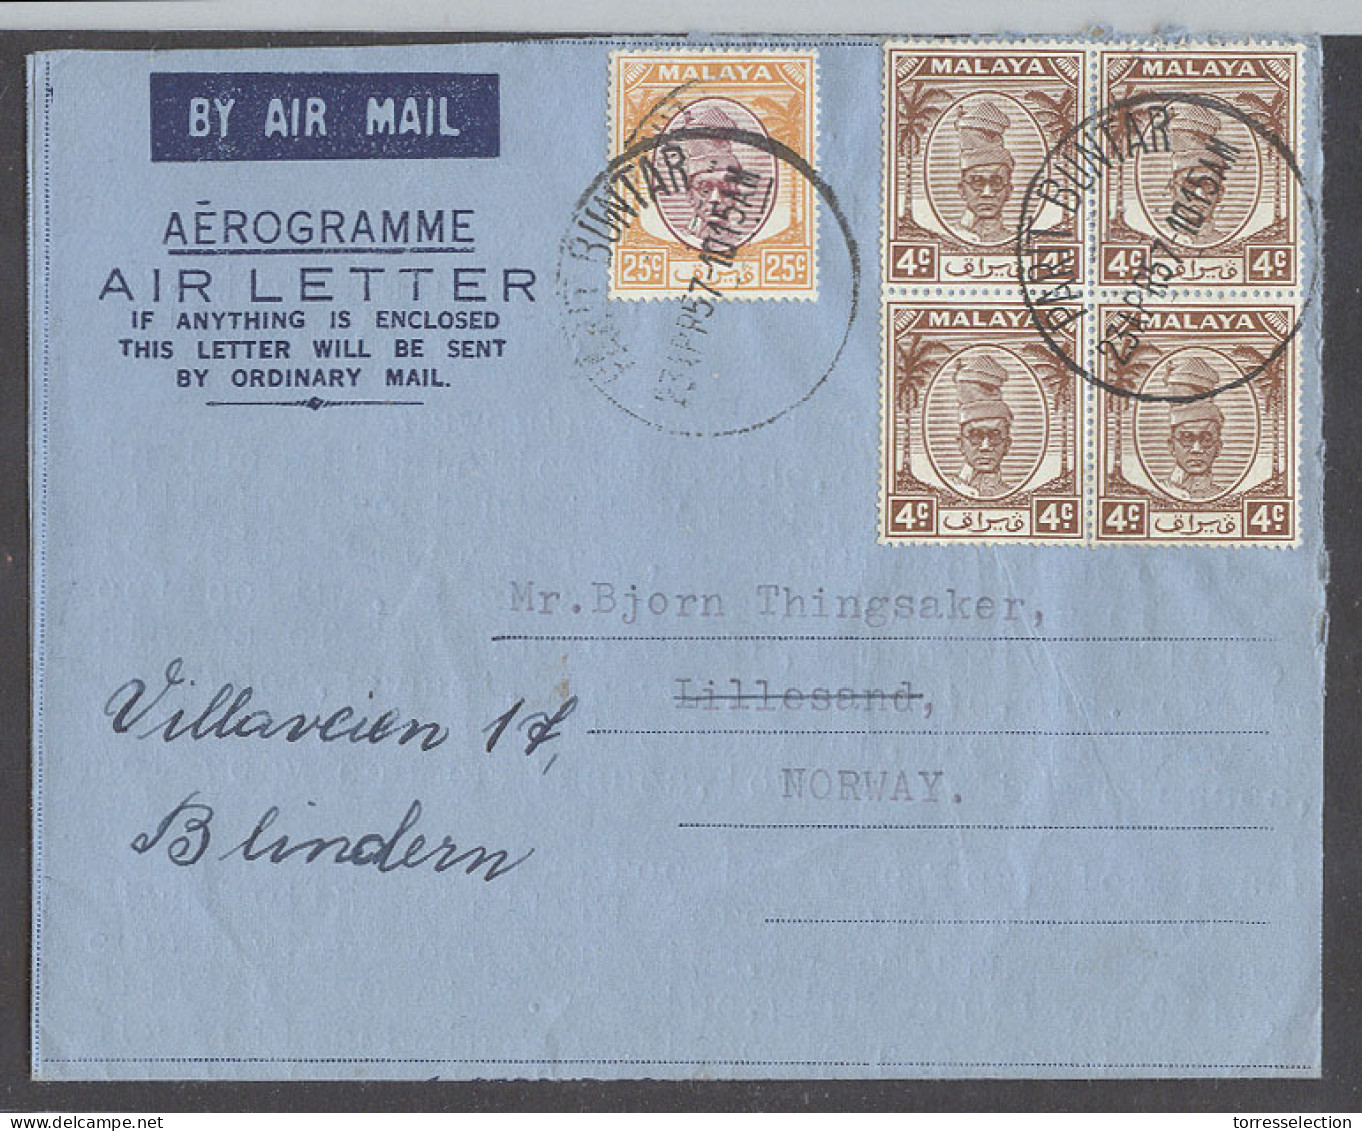 MALAYSIA. 1957 (23 April). Perak. Parit Buntar - Norway, Blindern. Fkd Air Letter 4c Rate Incl 4 Block Of Four Proper Te - Malaysia (1964-...)